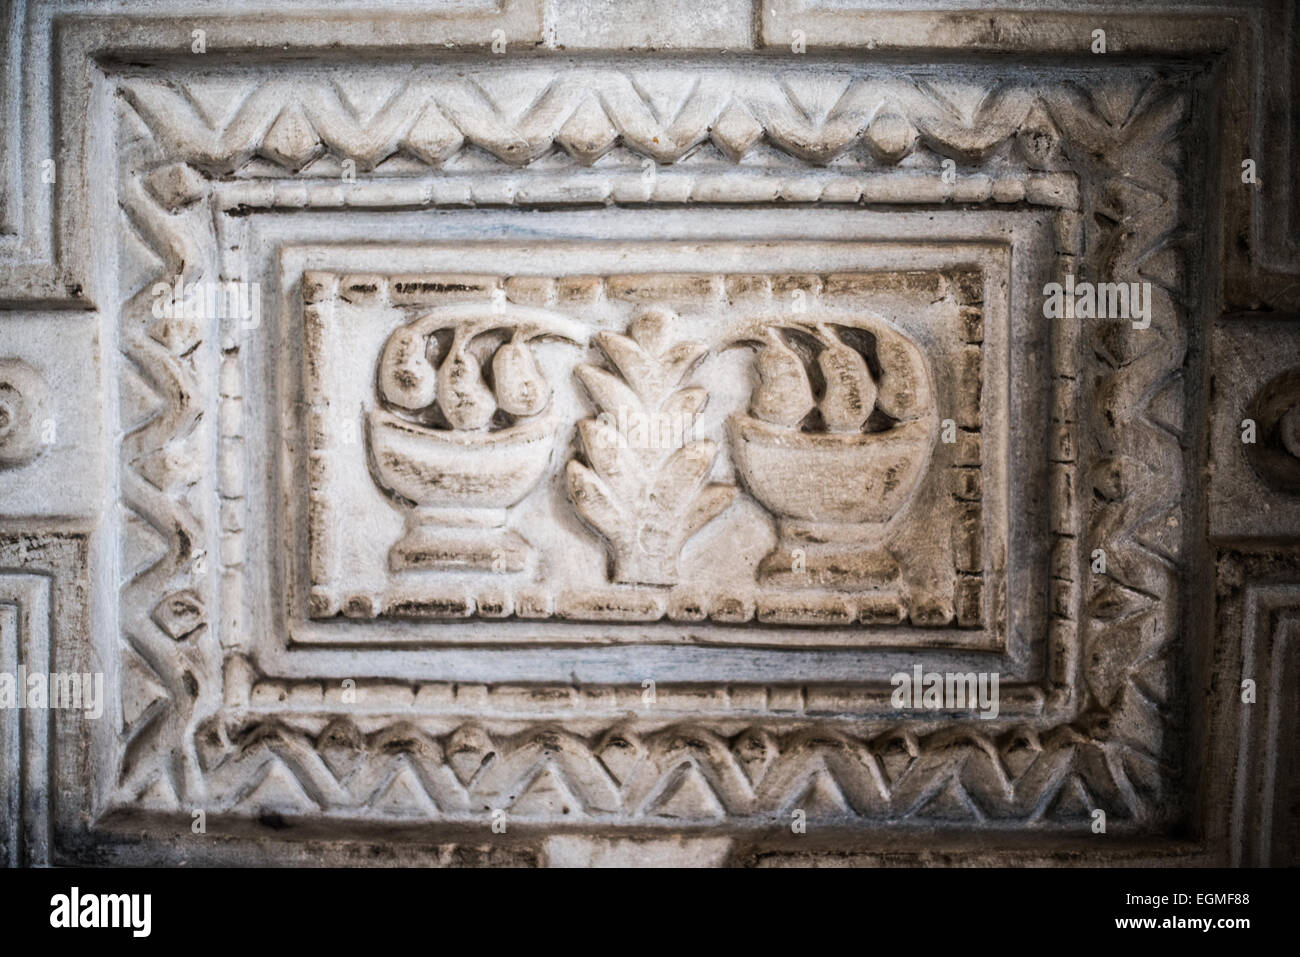 ISTANBUL, Turquie - relief détaillé des décorations de la porte de marbre dans l'enceinte supérieure sud, ou galerie, de Sainte-Sophie. Il a été utilisé par les participants dans synodes. Construit en 537, il a servi de cathédrale orthodoxe orientale, de cathédrale catholique romaine, de mosquée et maintenant de musée. Également connu sous le nom d'Ayasofya ou d'Aya Sofia, c'est l'un des principaux monuments d'Istanbul. En juillet 2020, le président turc Recep Tayyip Erdogan décrète que Sainte-Sophie serait reconvertie en mosquée. Banque D'Images